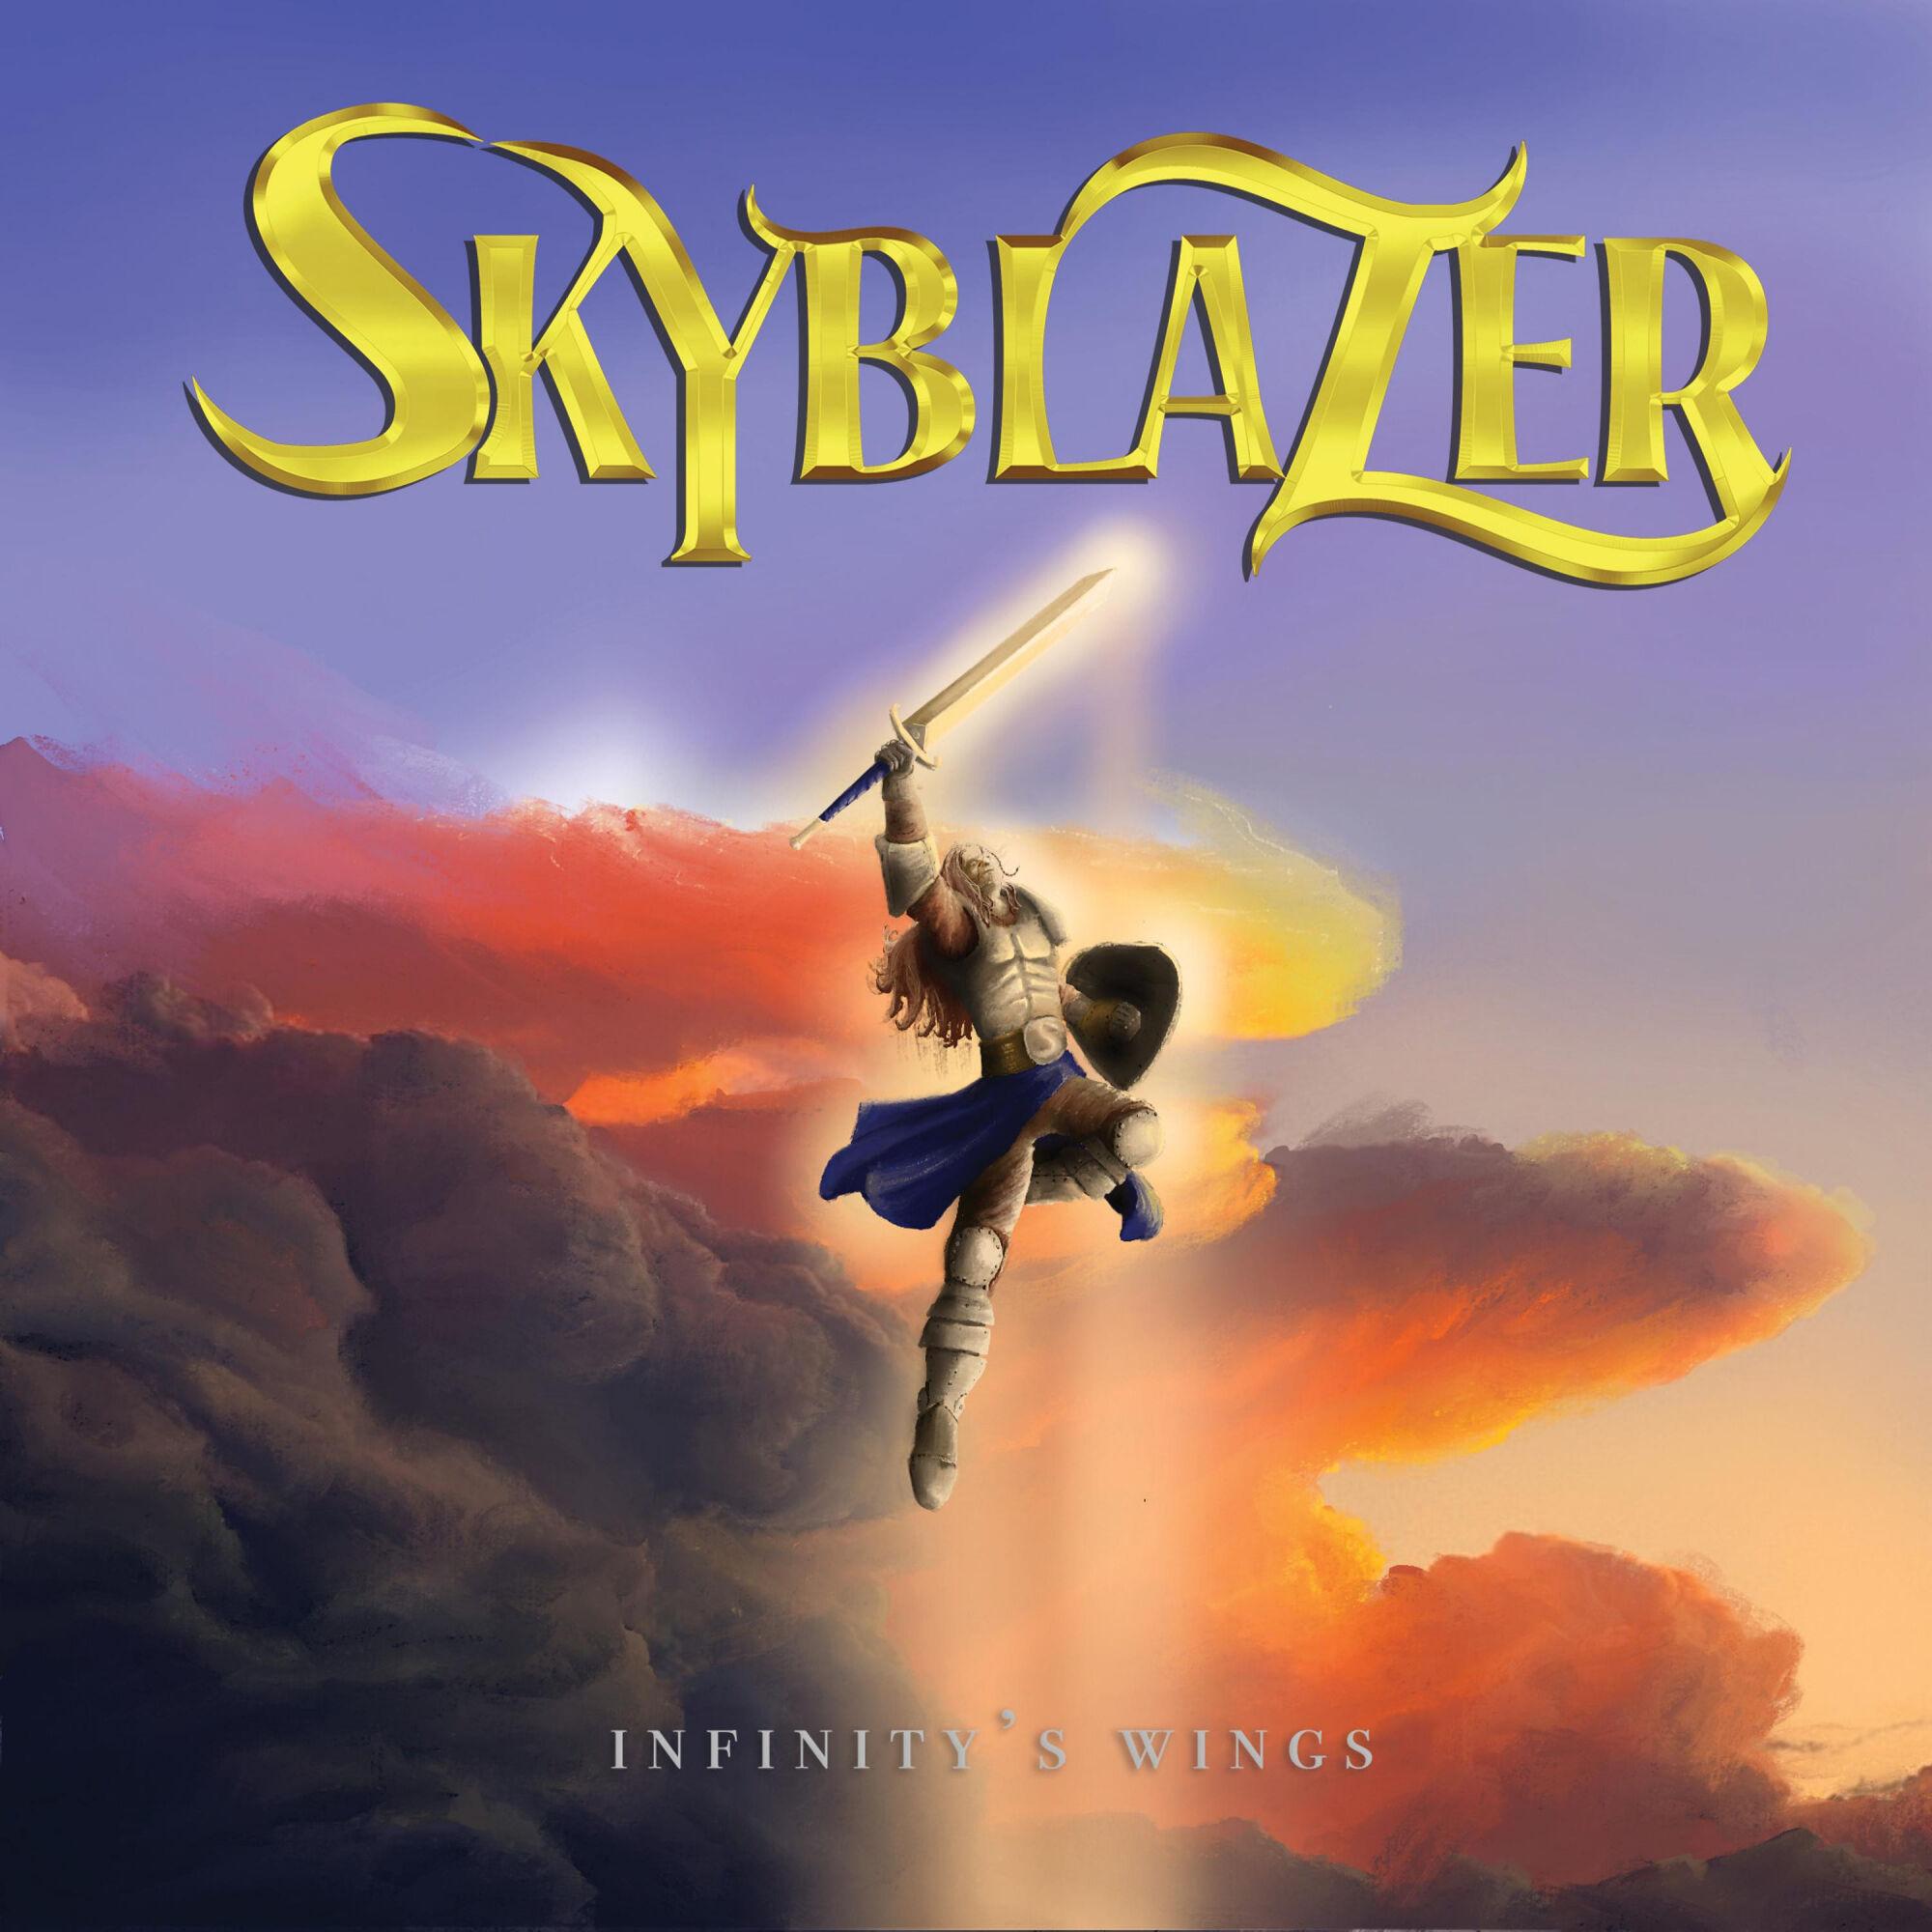 Skyblazer - Infinity's Wings 